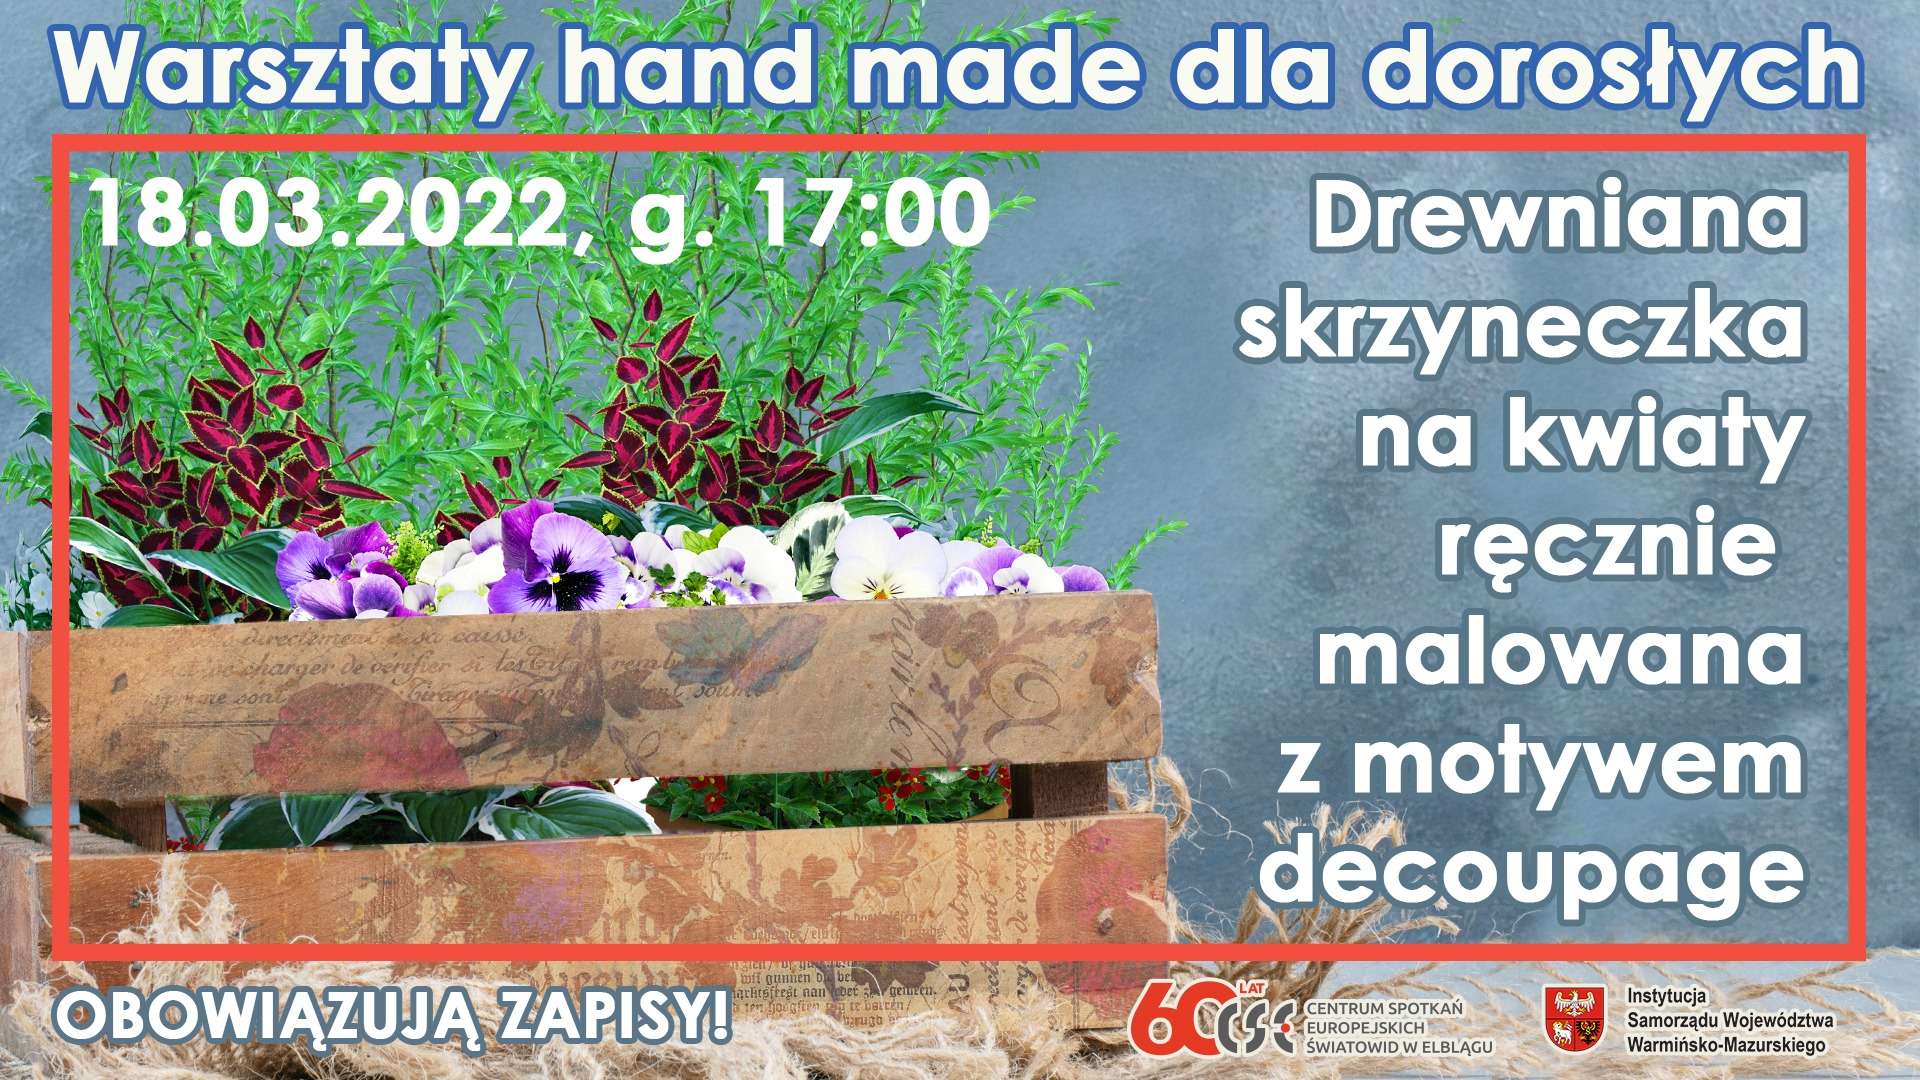 Zapraszamy na warsztaty hand made dla dorosłych | Drewniana skrzynia na kwiaty ręcznie malowana z motywem decoupage